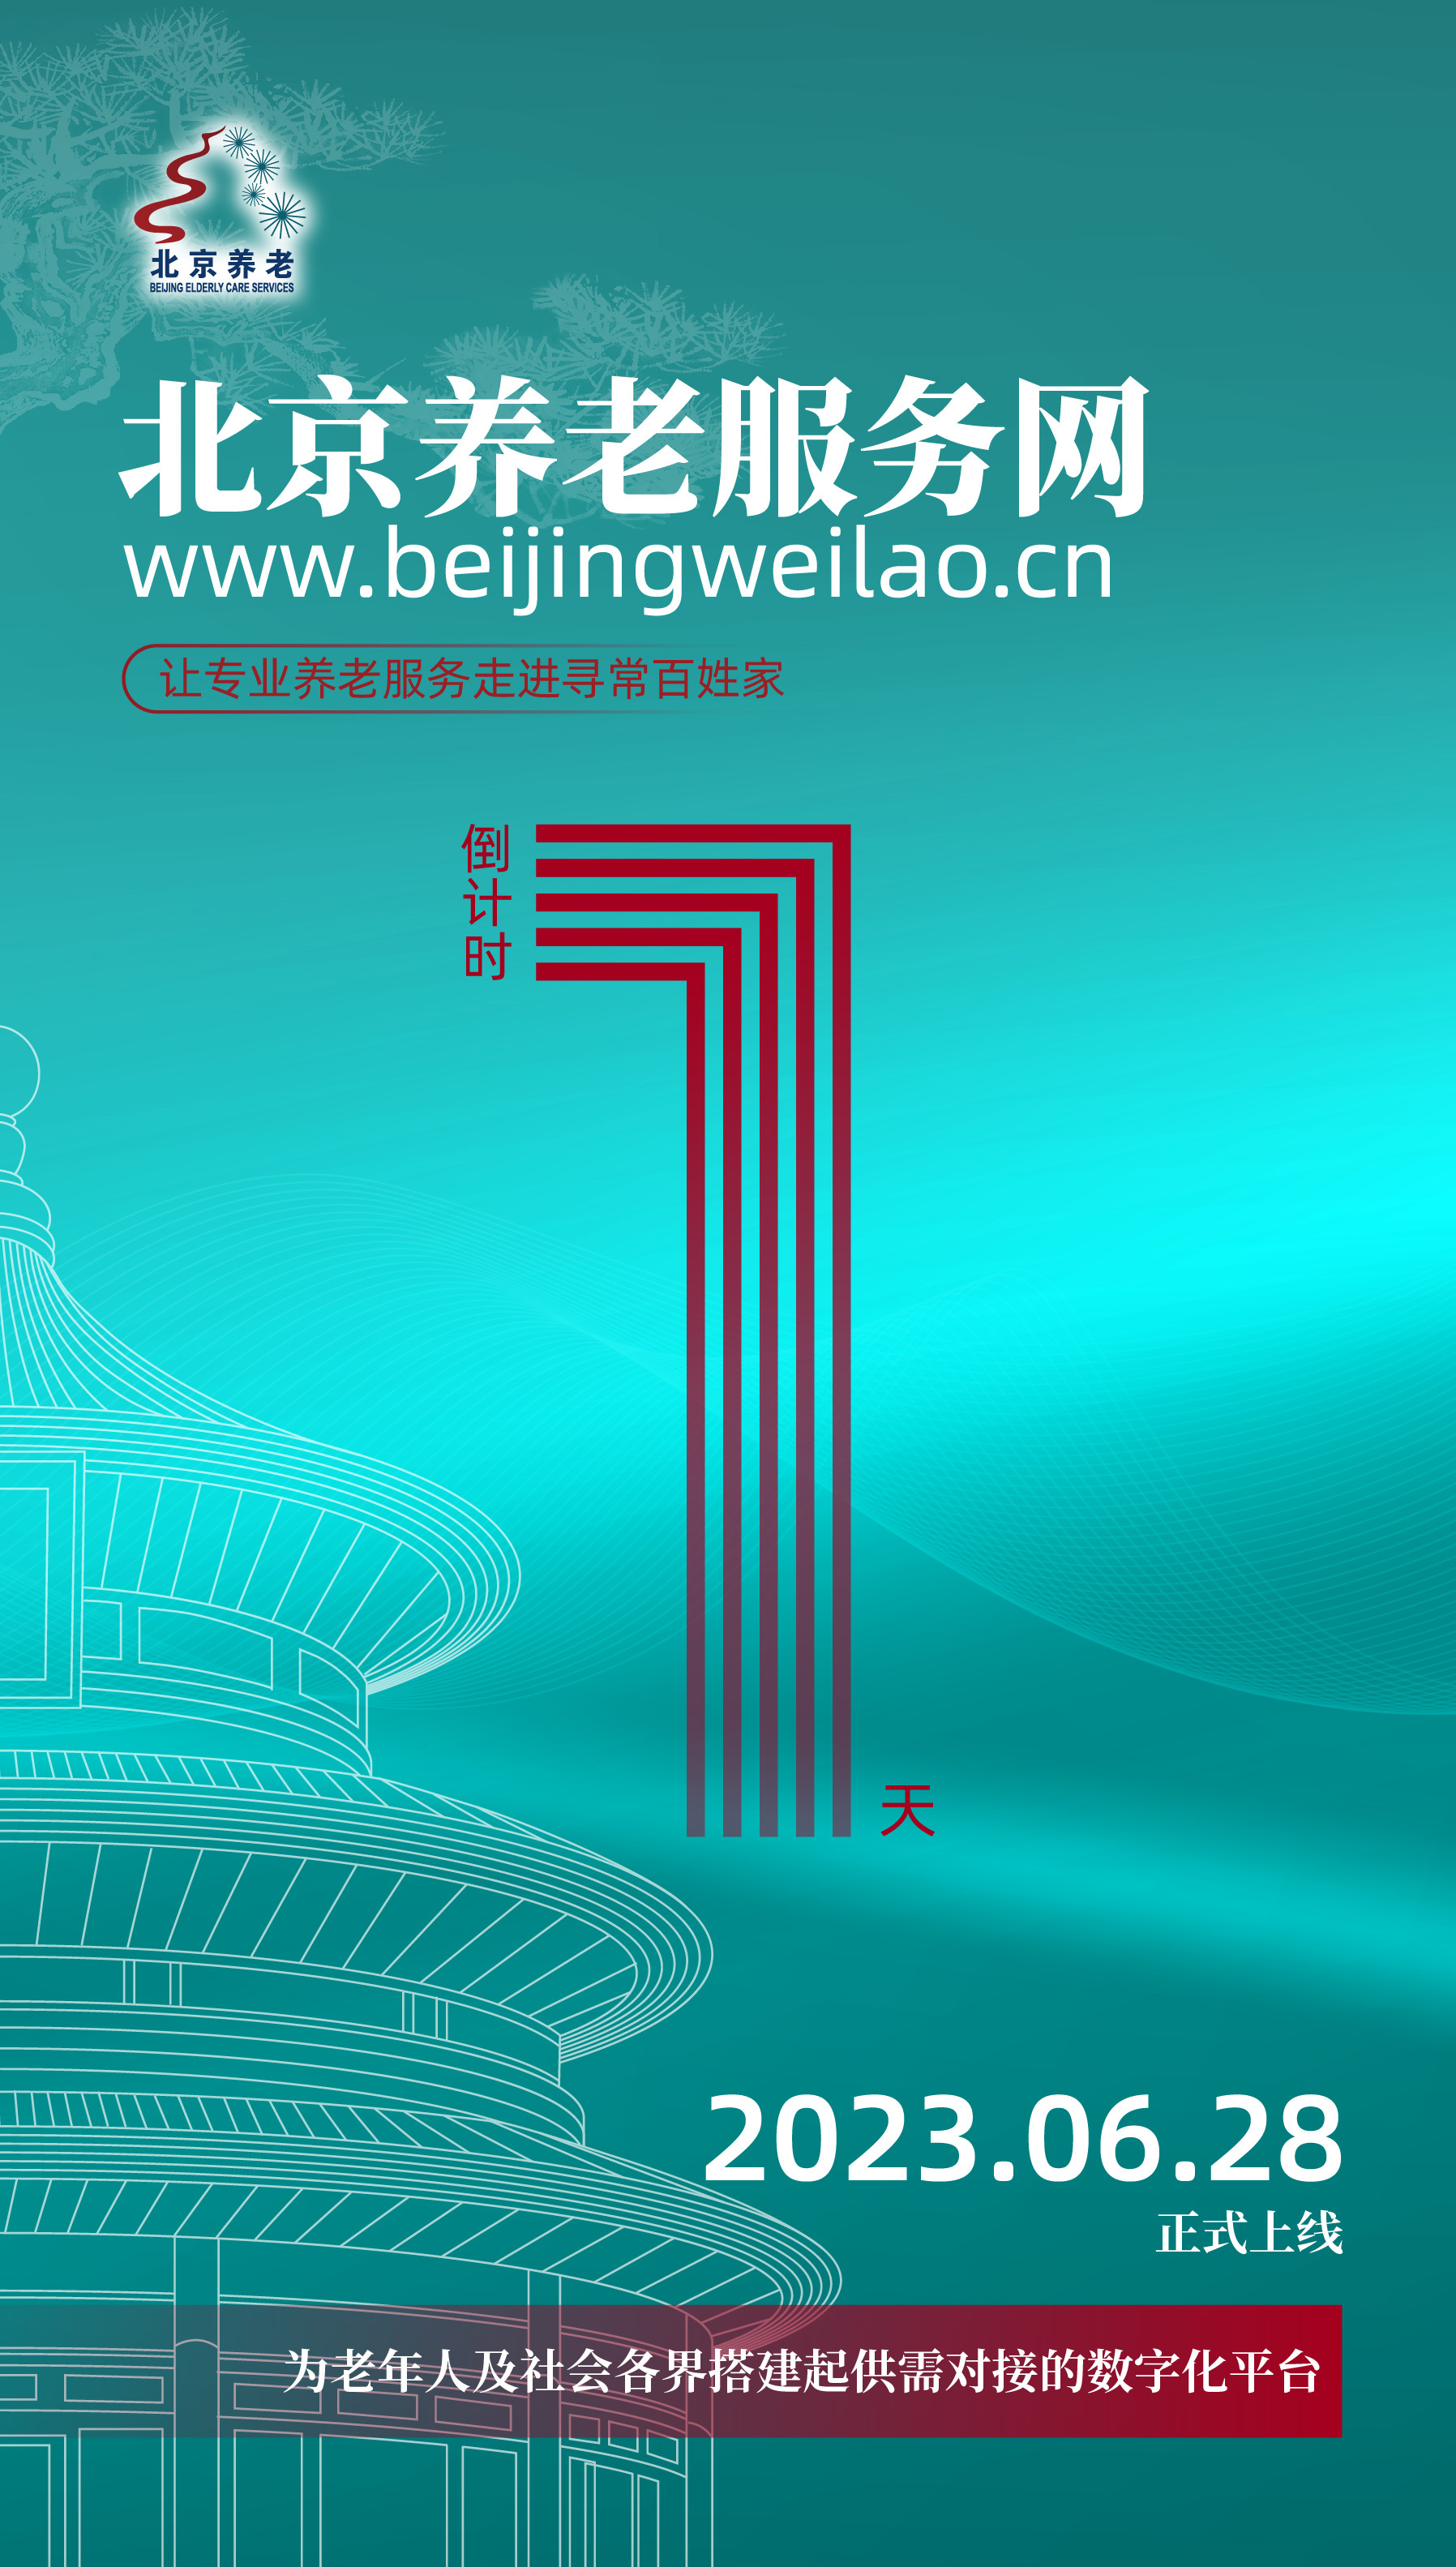 北京养老服务网6月28日开通！全市574家养老机构集体上线